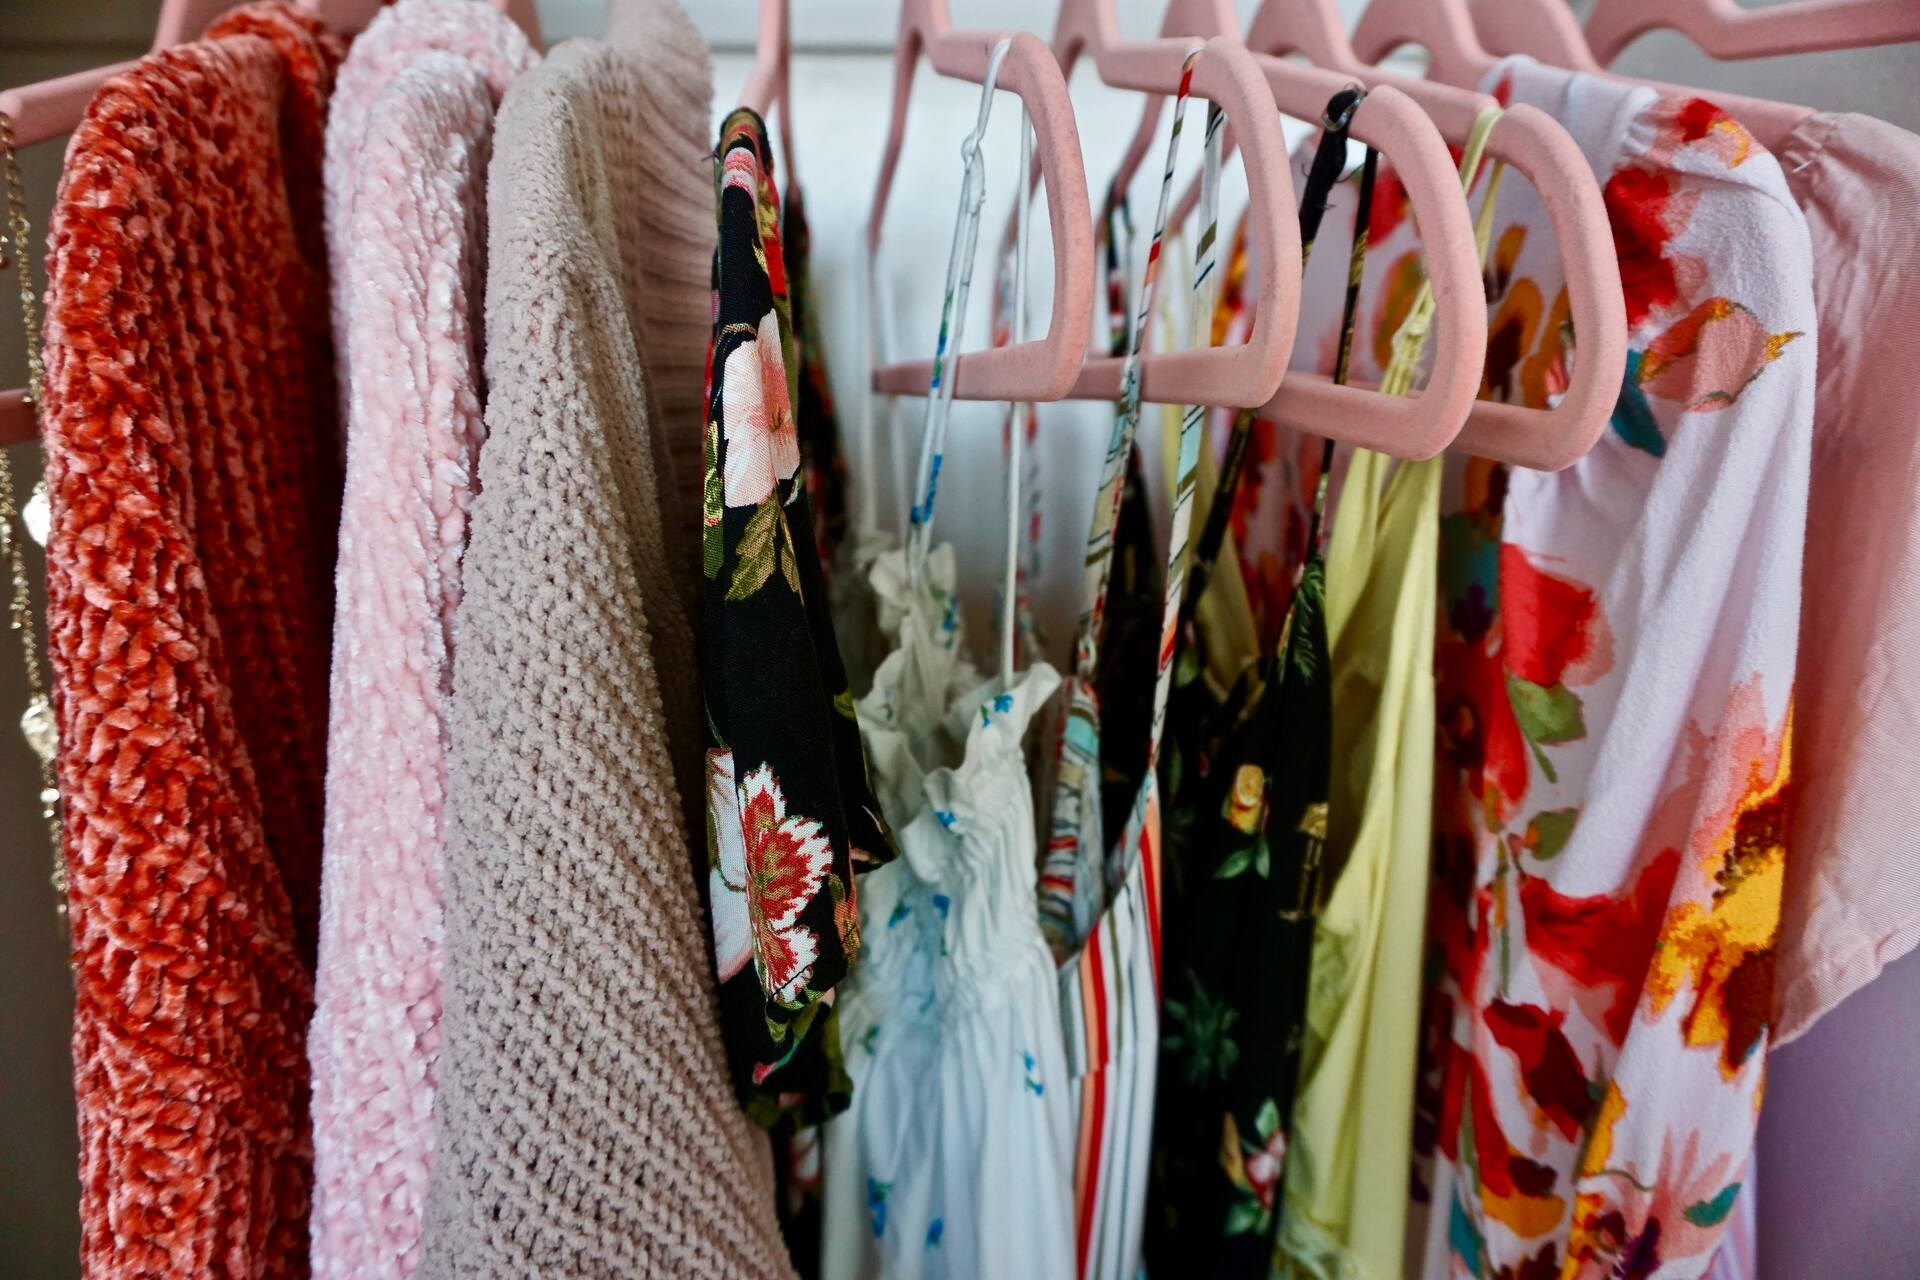 Dresses in a closet 